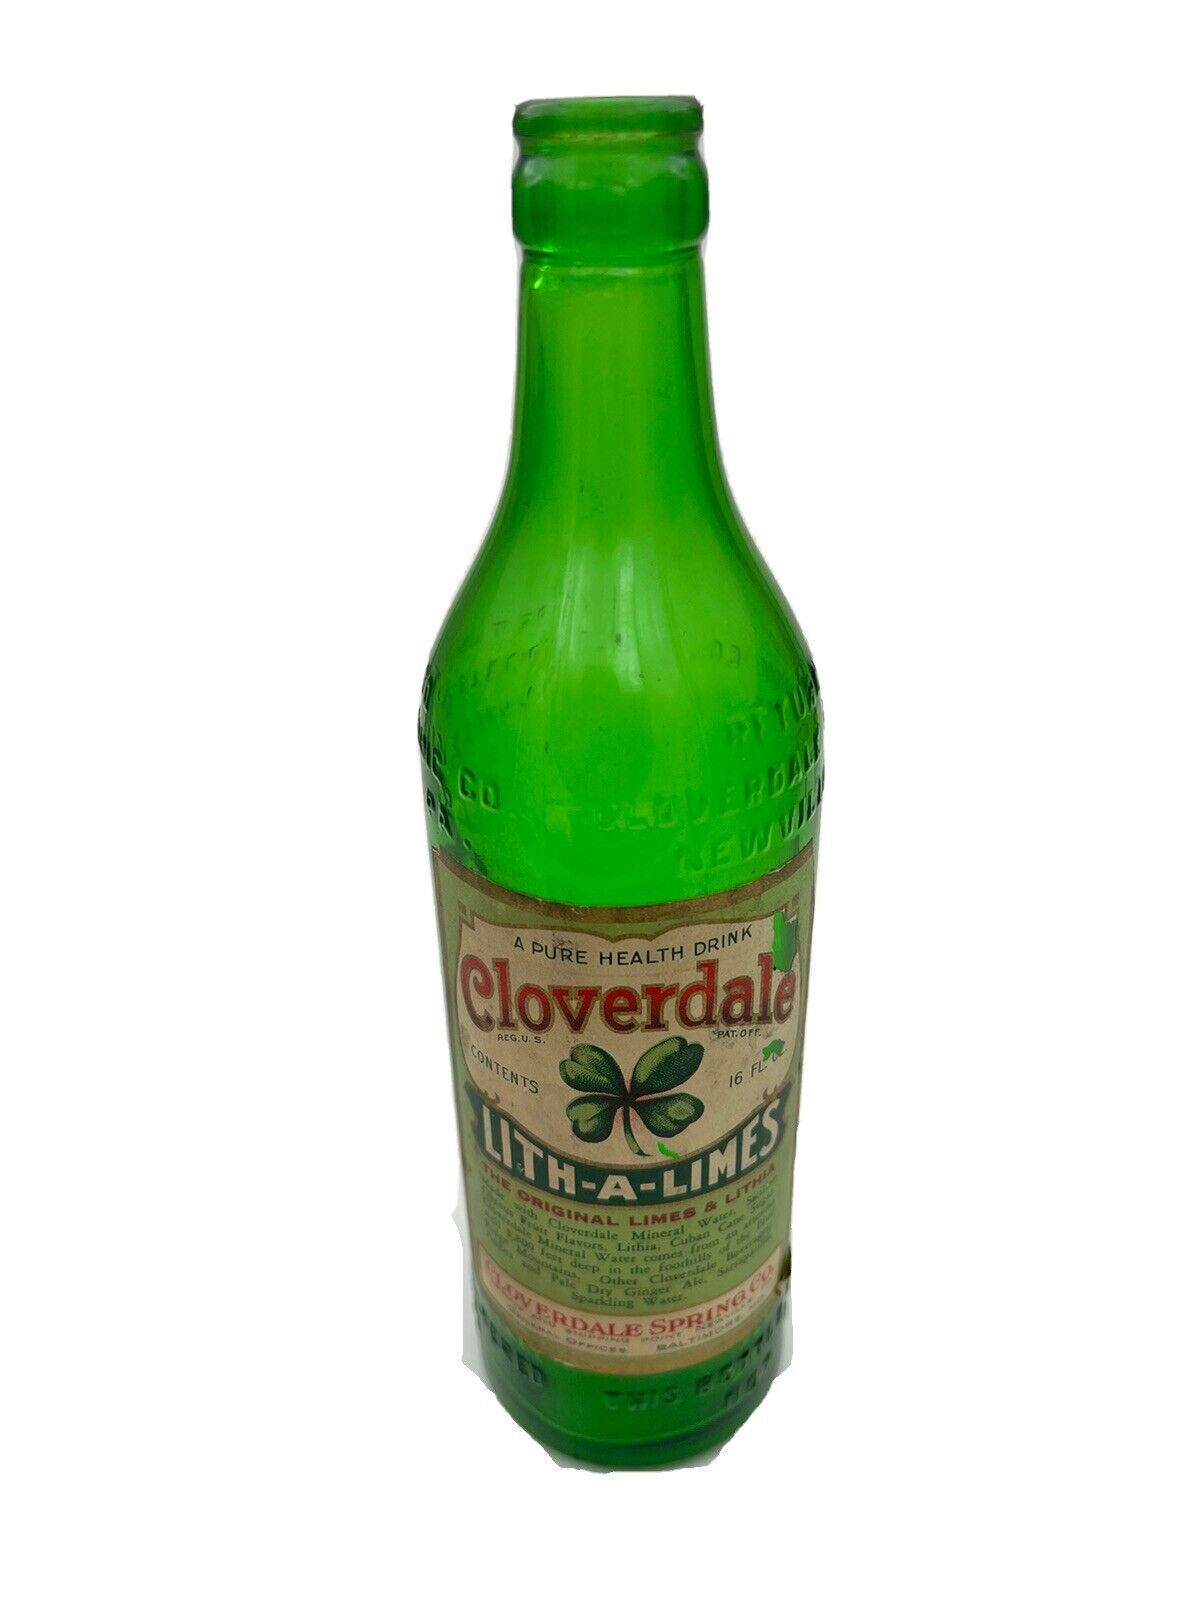 Vintage Cloverdale Lith A Limes Bottle Paper Label RARE 1930s